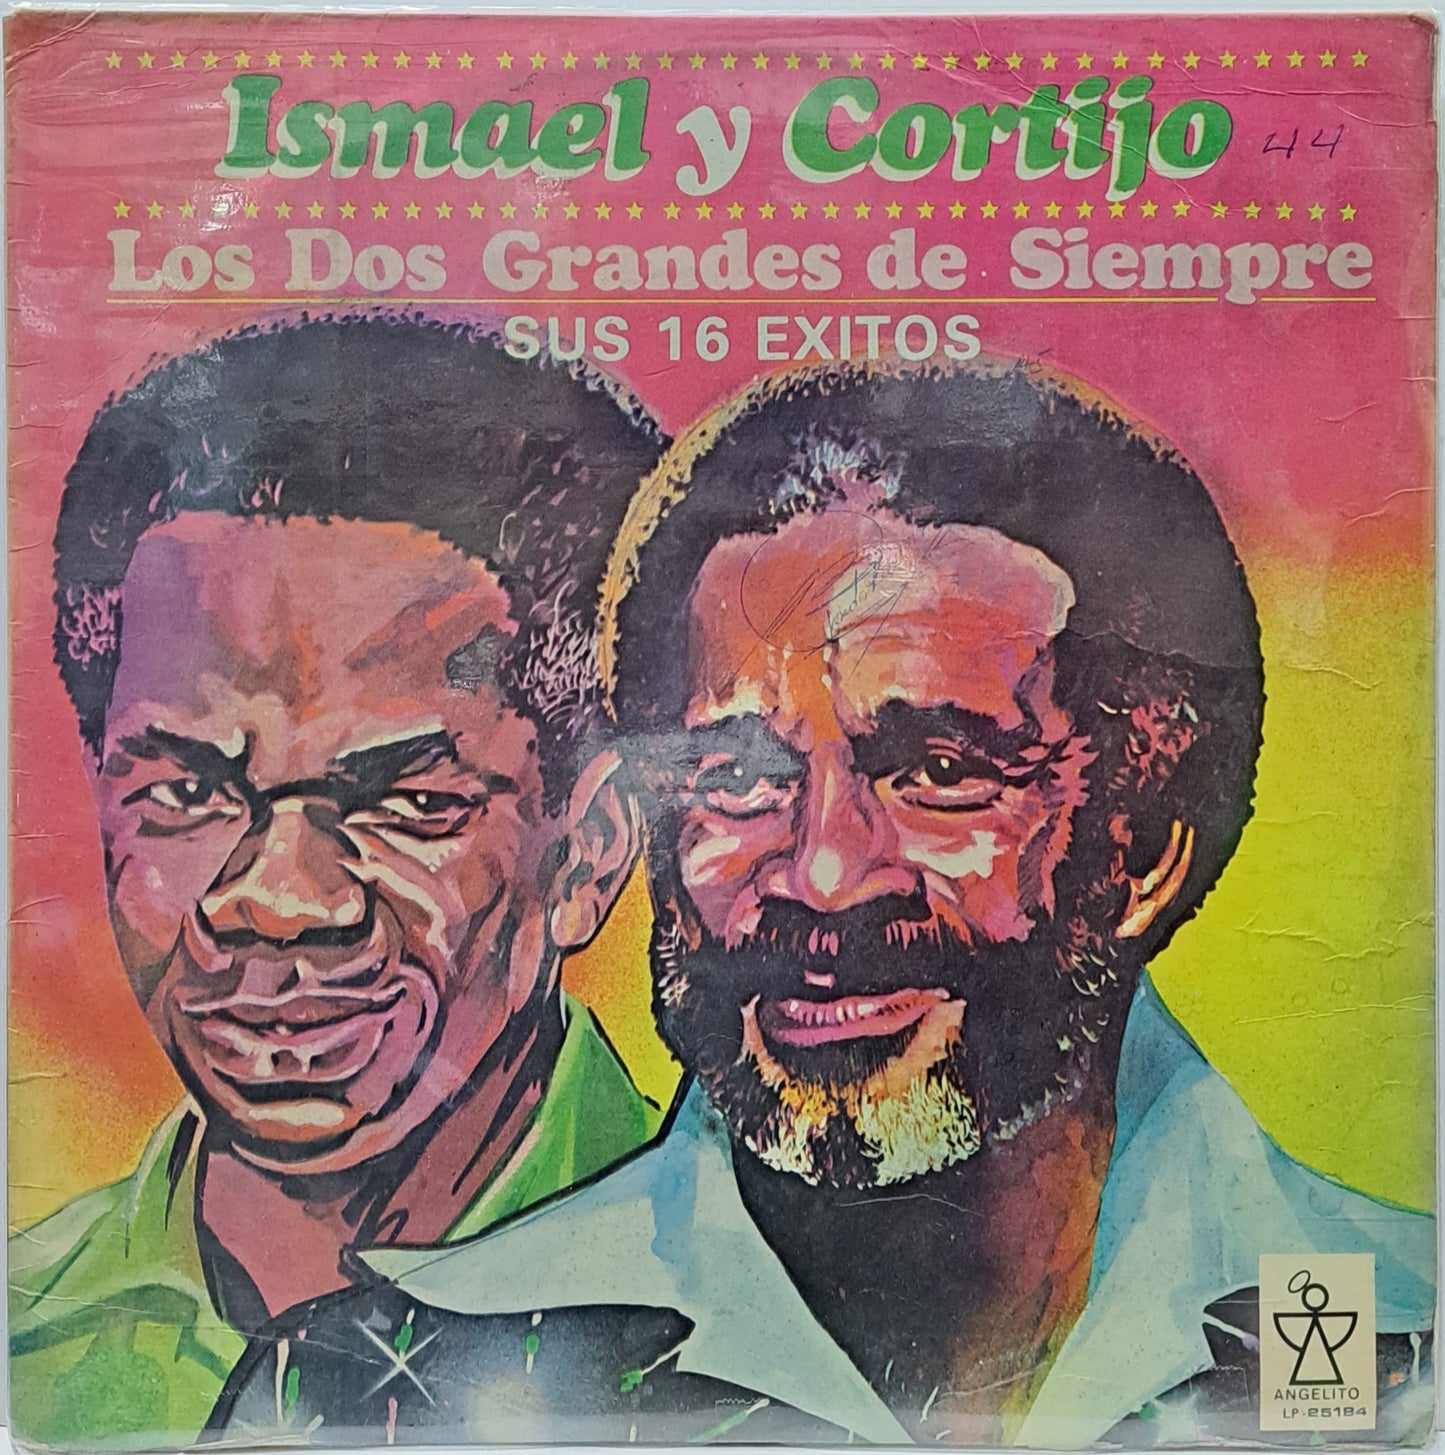 ISMAEL Y CORTIJO - LOS DOS GRANDES DE SIEMPRE LP